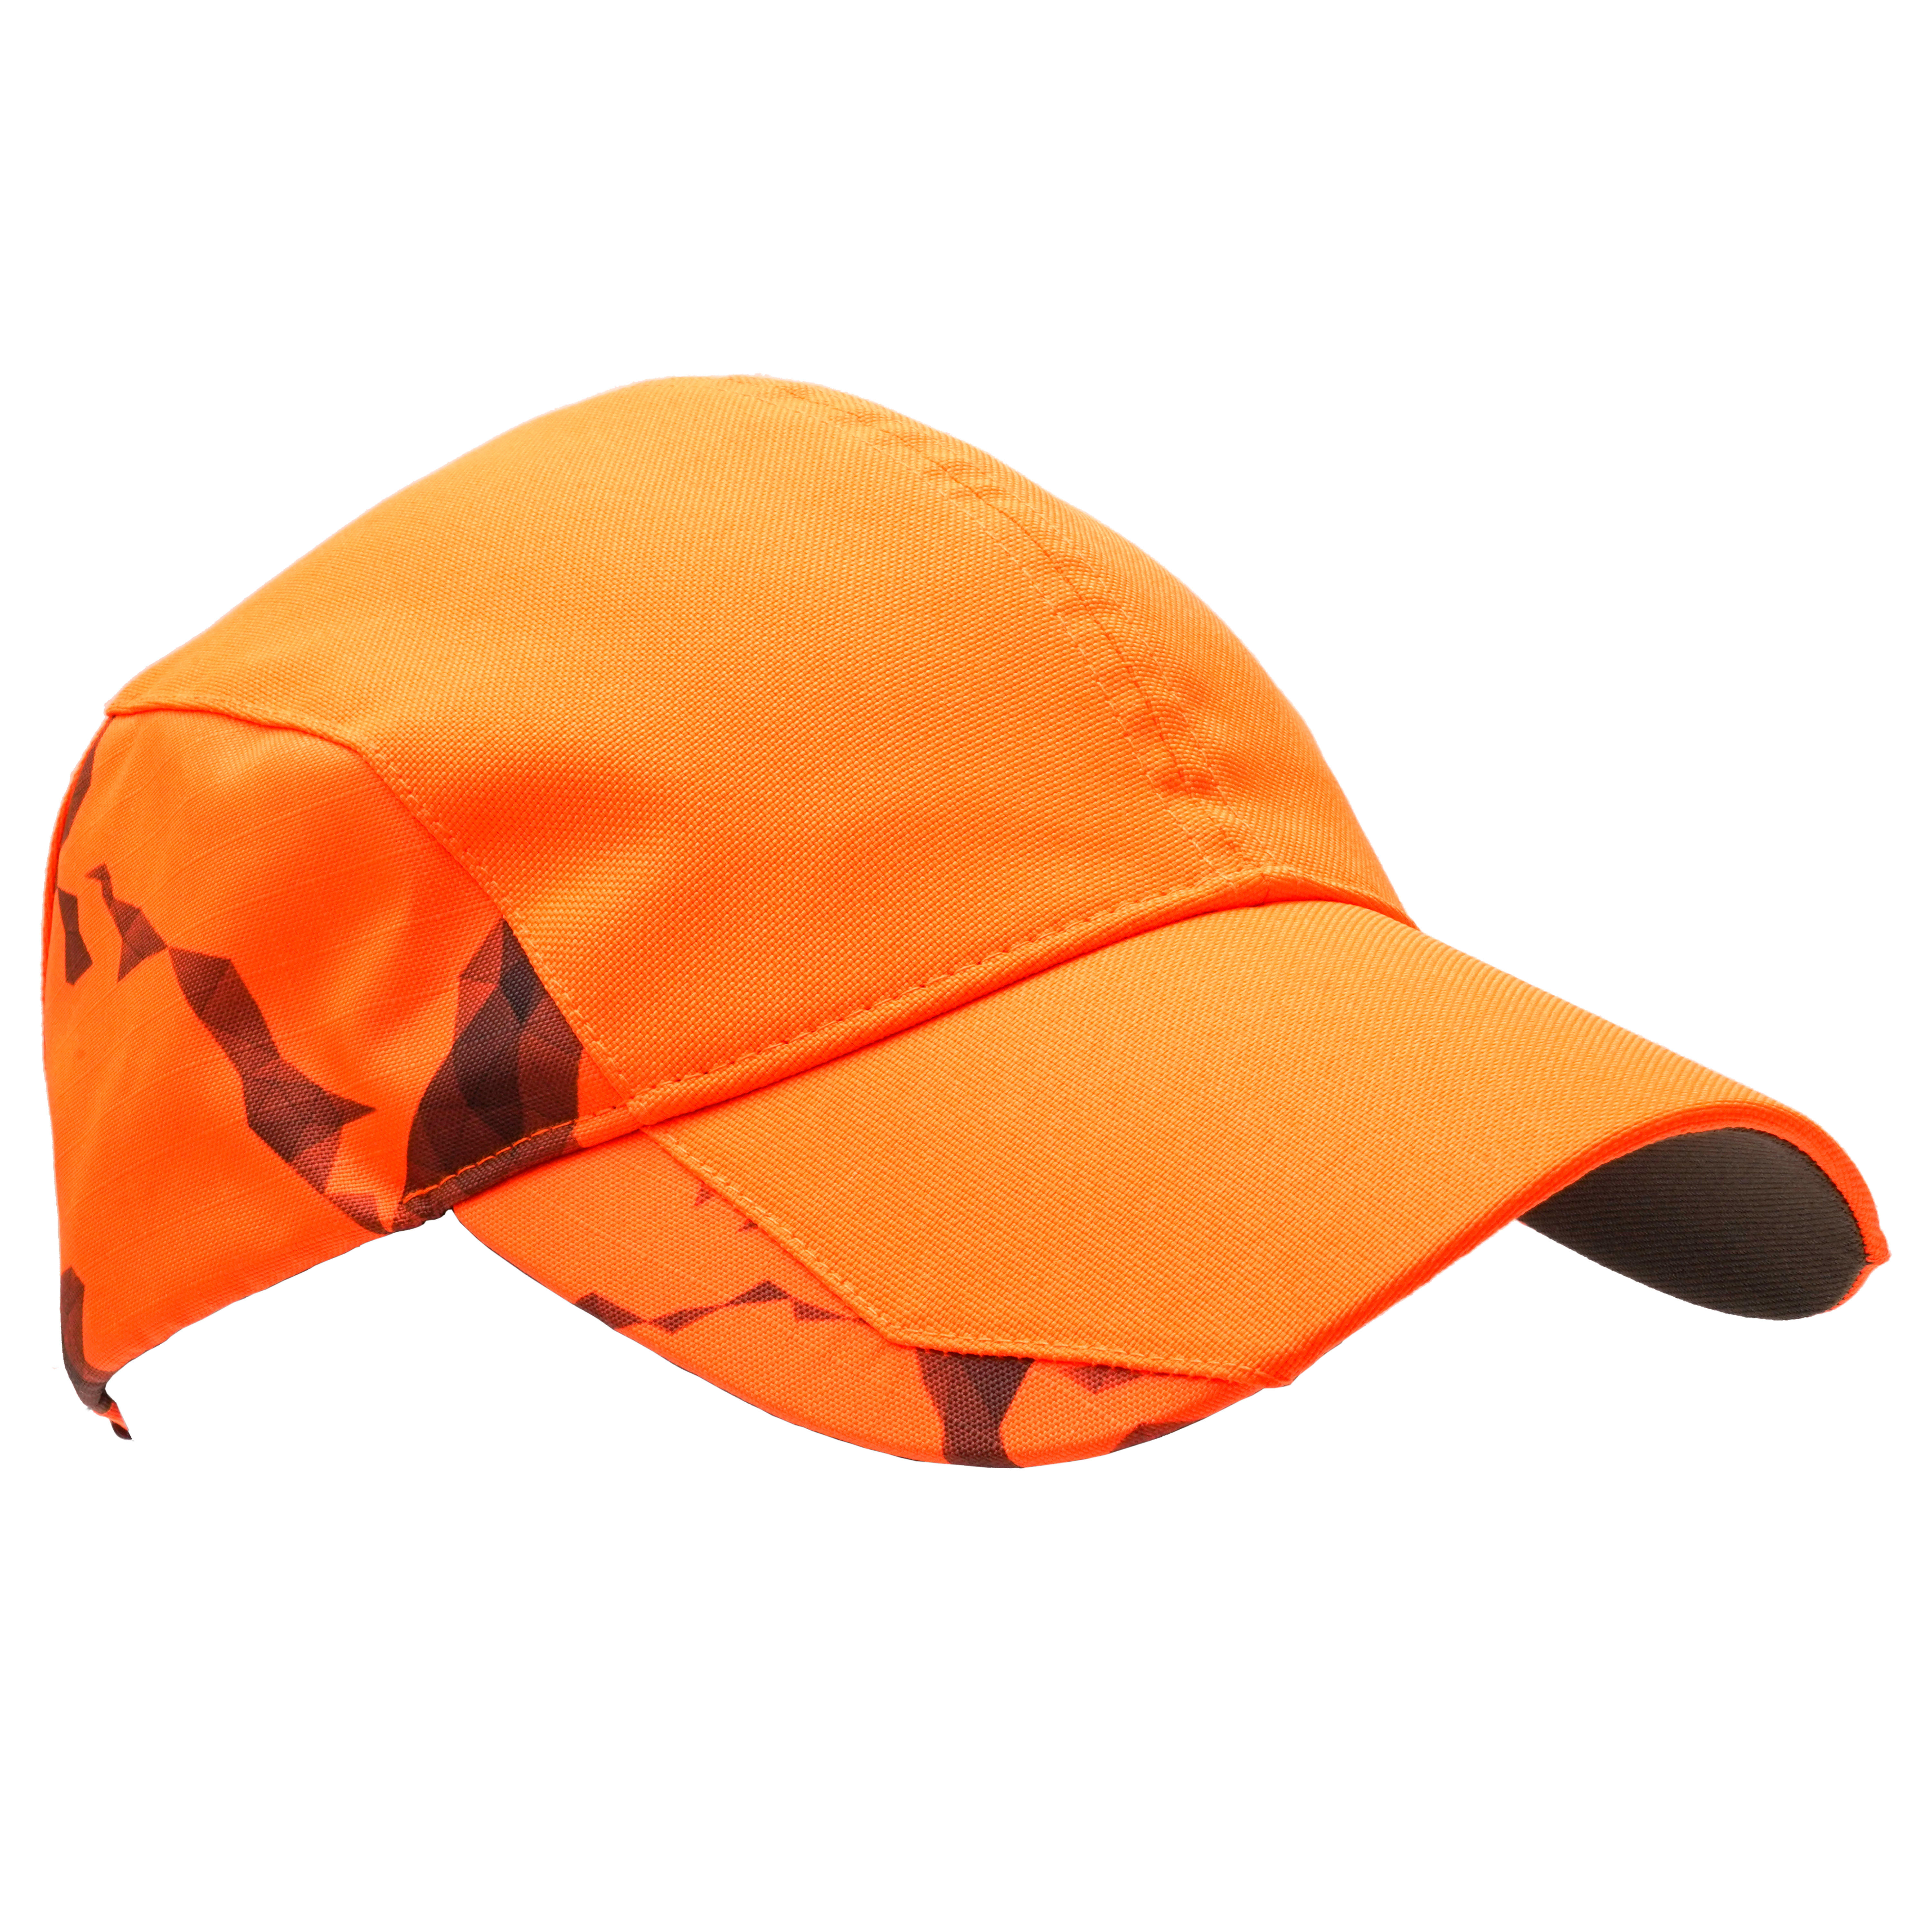  Șapcă SUPERTRACK 500 rezistentă hidrofobă portocaliu damă 